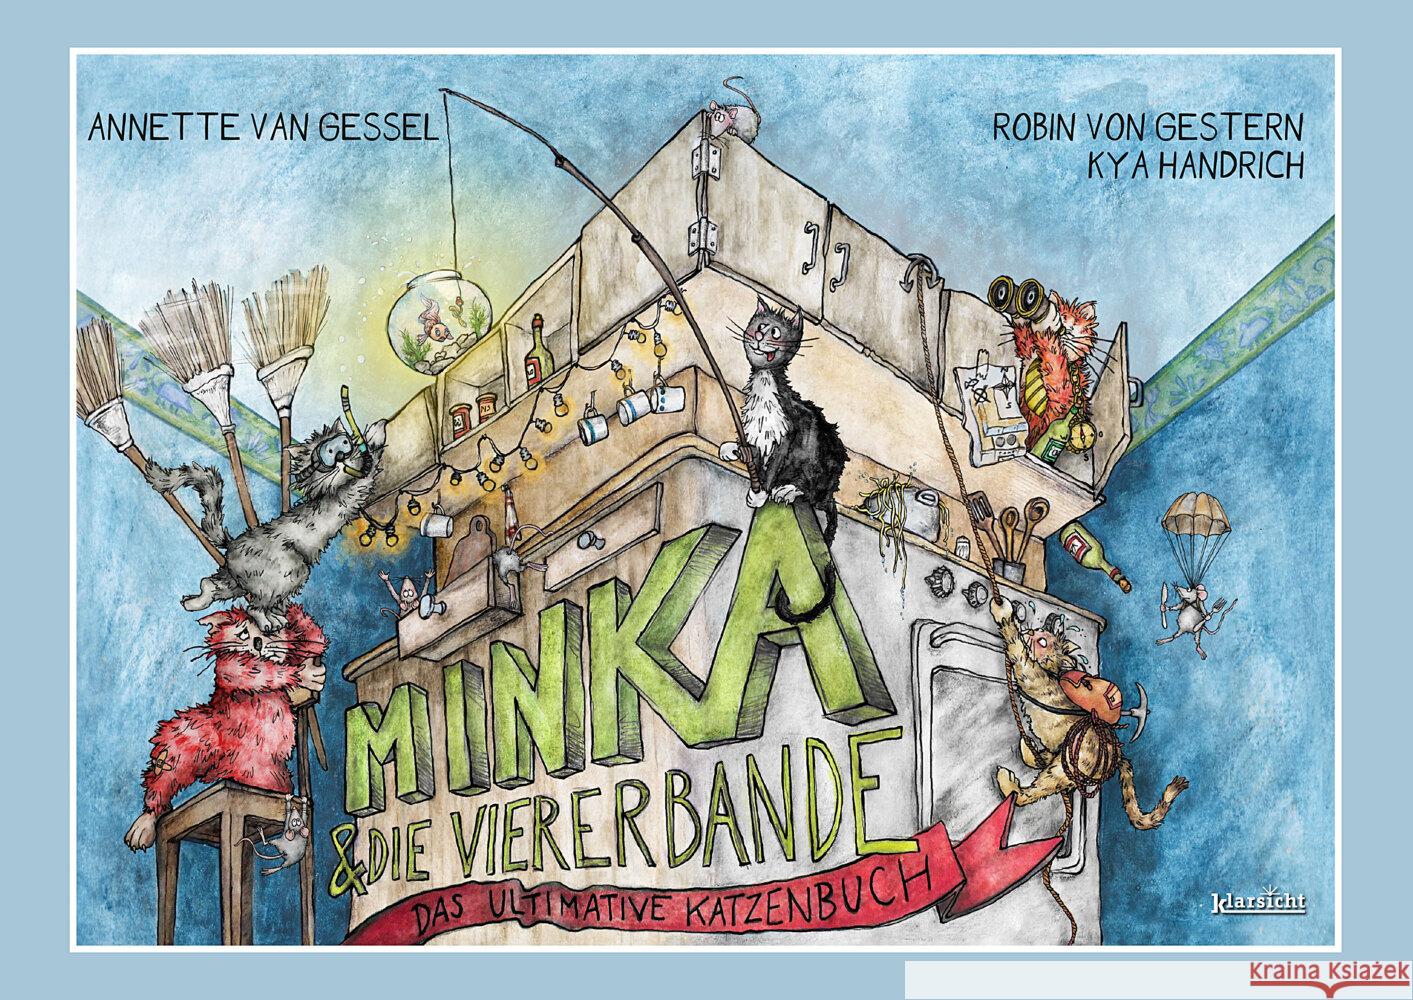 Minka und die Viererbande van Gessel, Annette 9783985842346 Klarsicht Verlag Hamburg